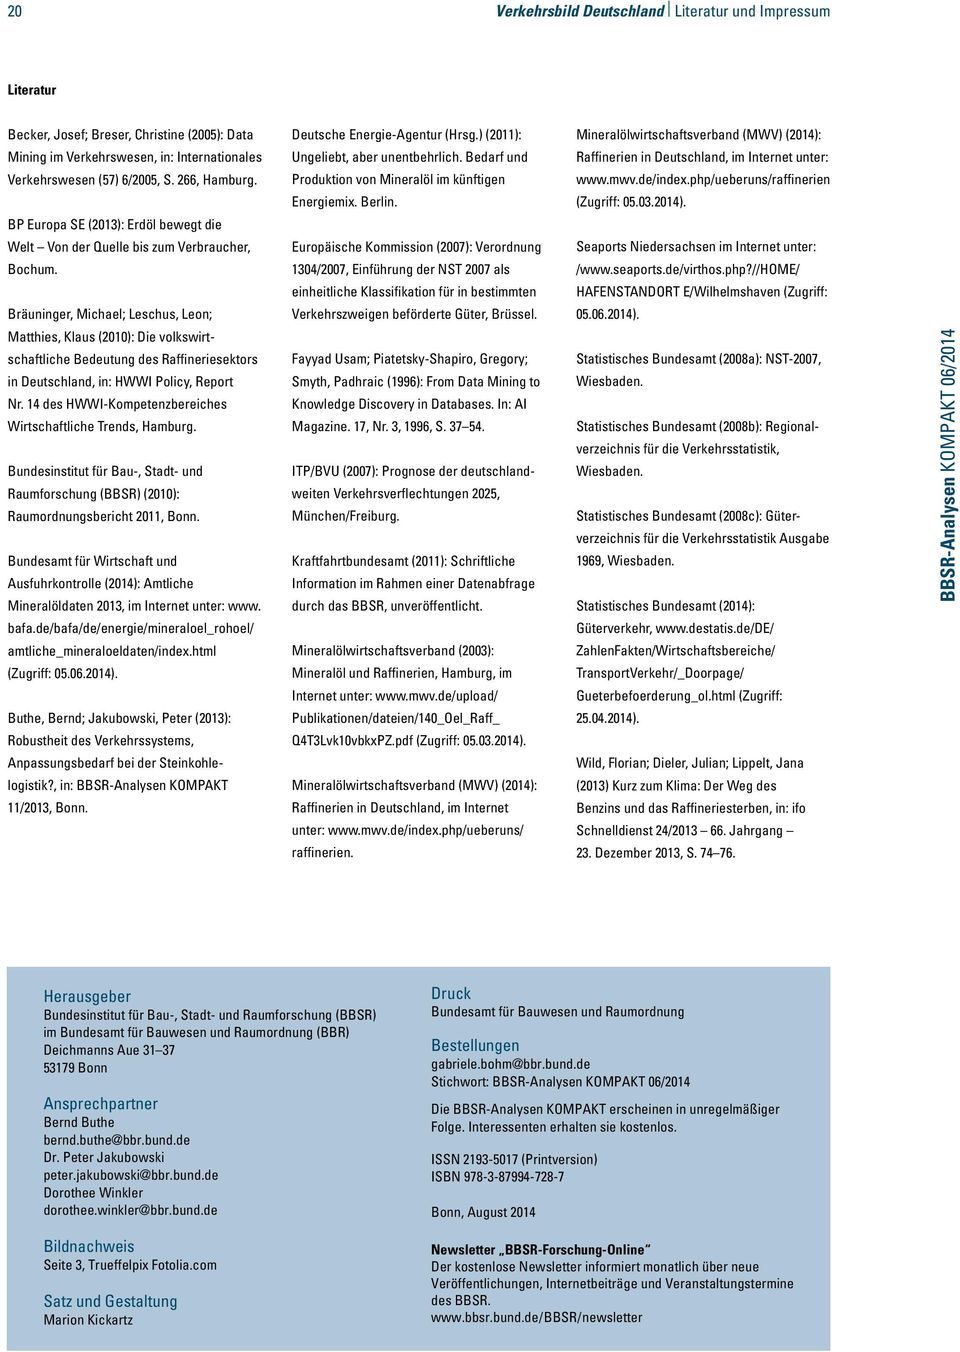 Bräuninger, Michael; Leschus, Leon; Matthies, Klaus (2010): Die volkswirtschaftliche Bedeutung des Raffineriesektors in Deutschland, in: HWWI Policy, Report Nr.